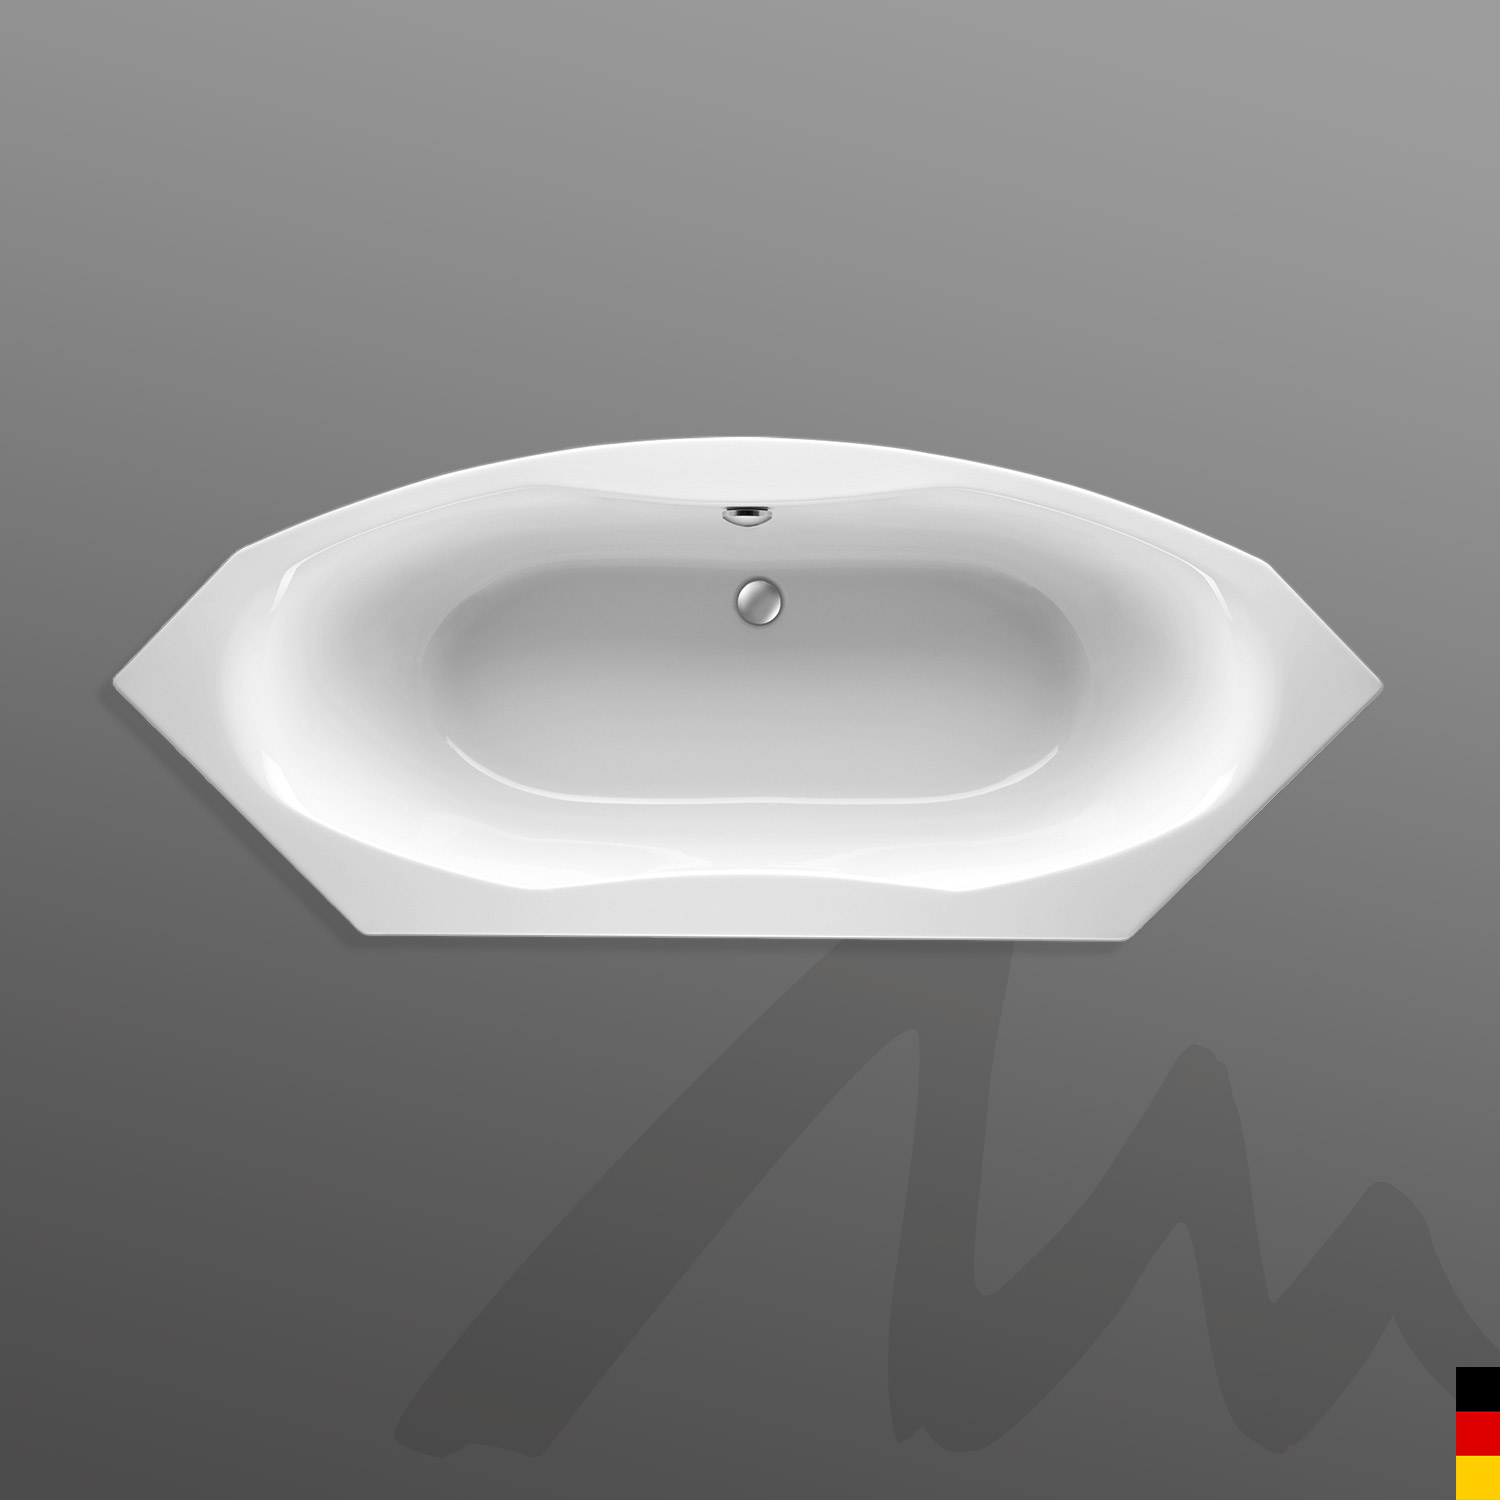 Mauersberger Badewanne Eck Arista 201/80  201x80x43cm  Farbe:weiß